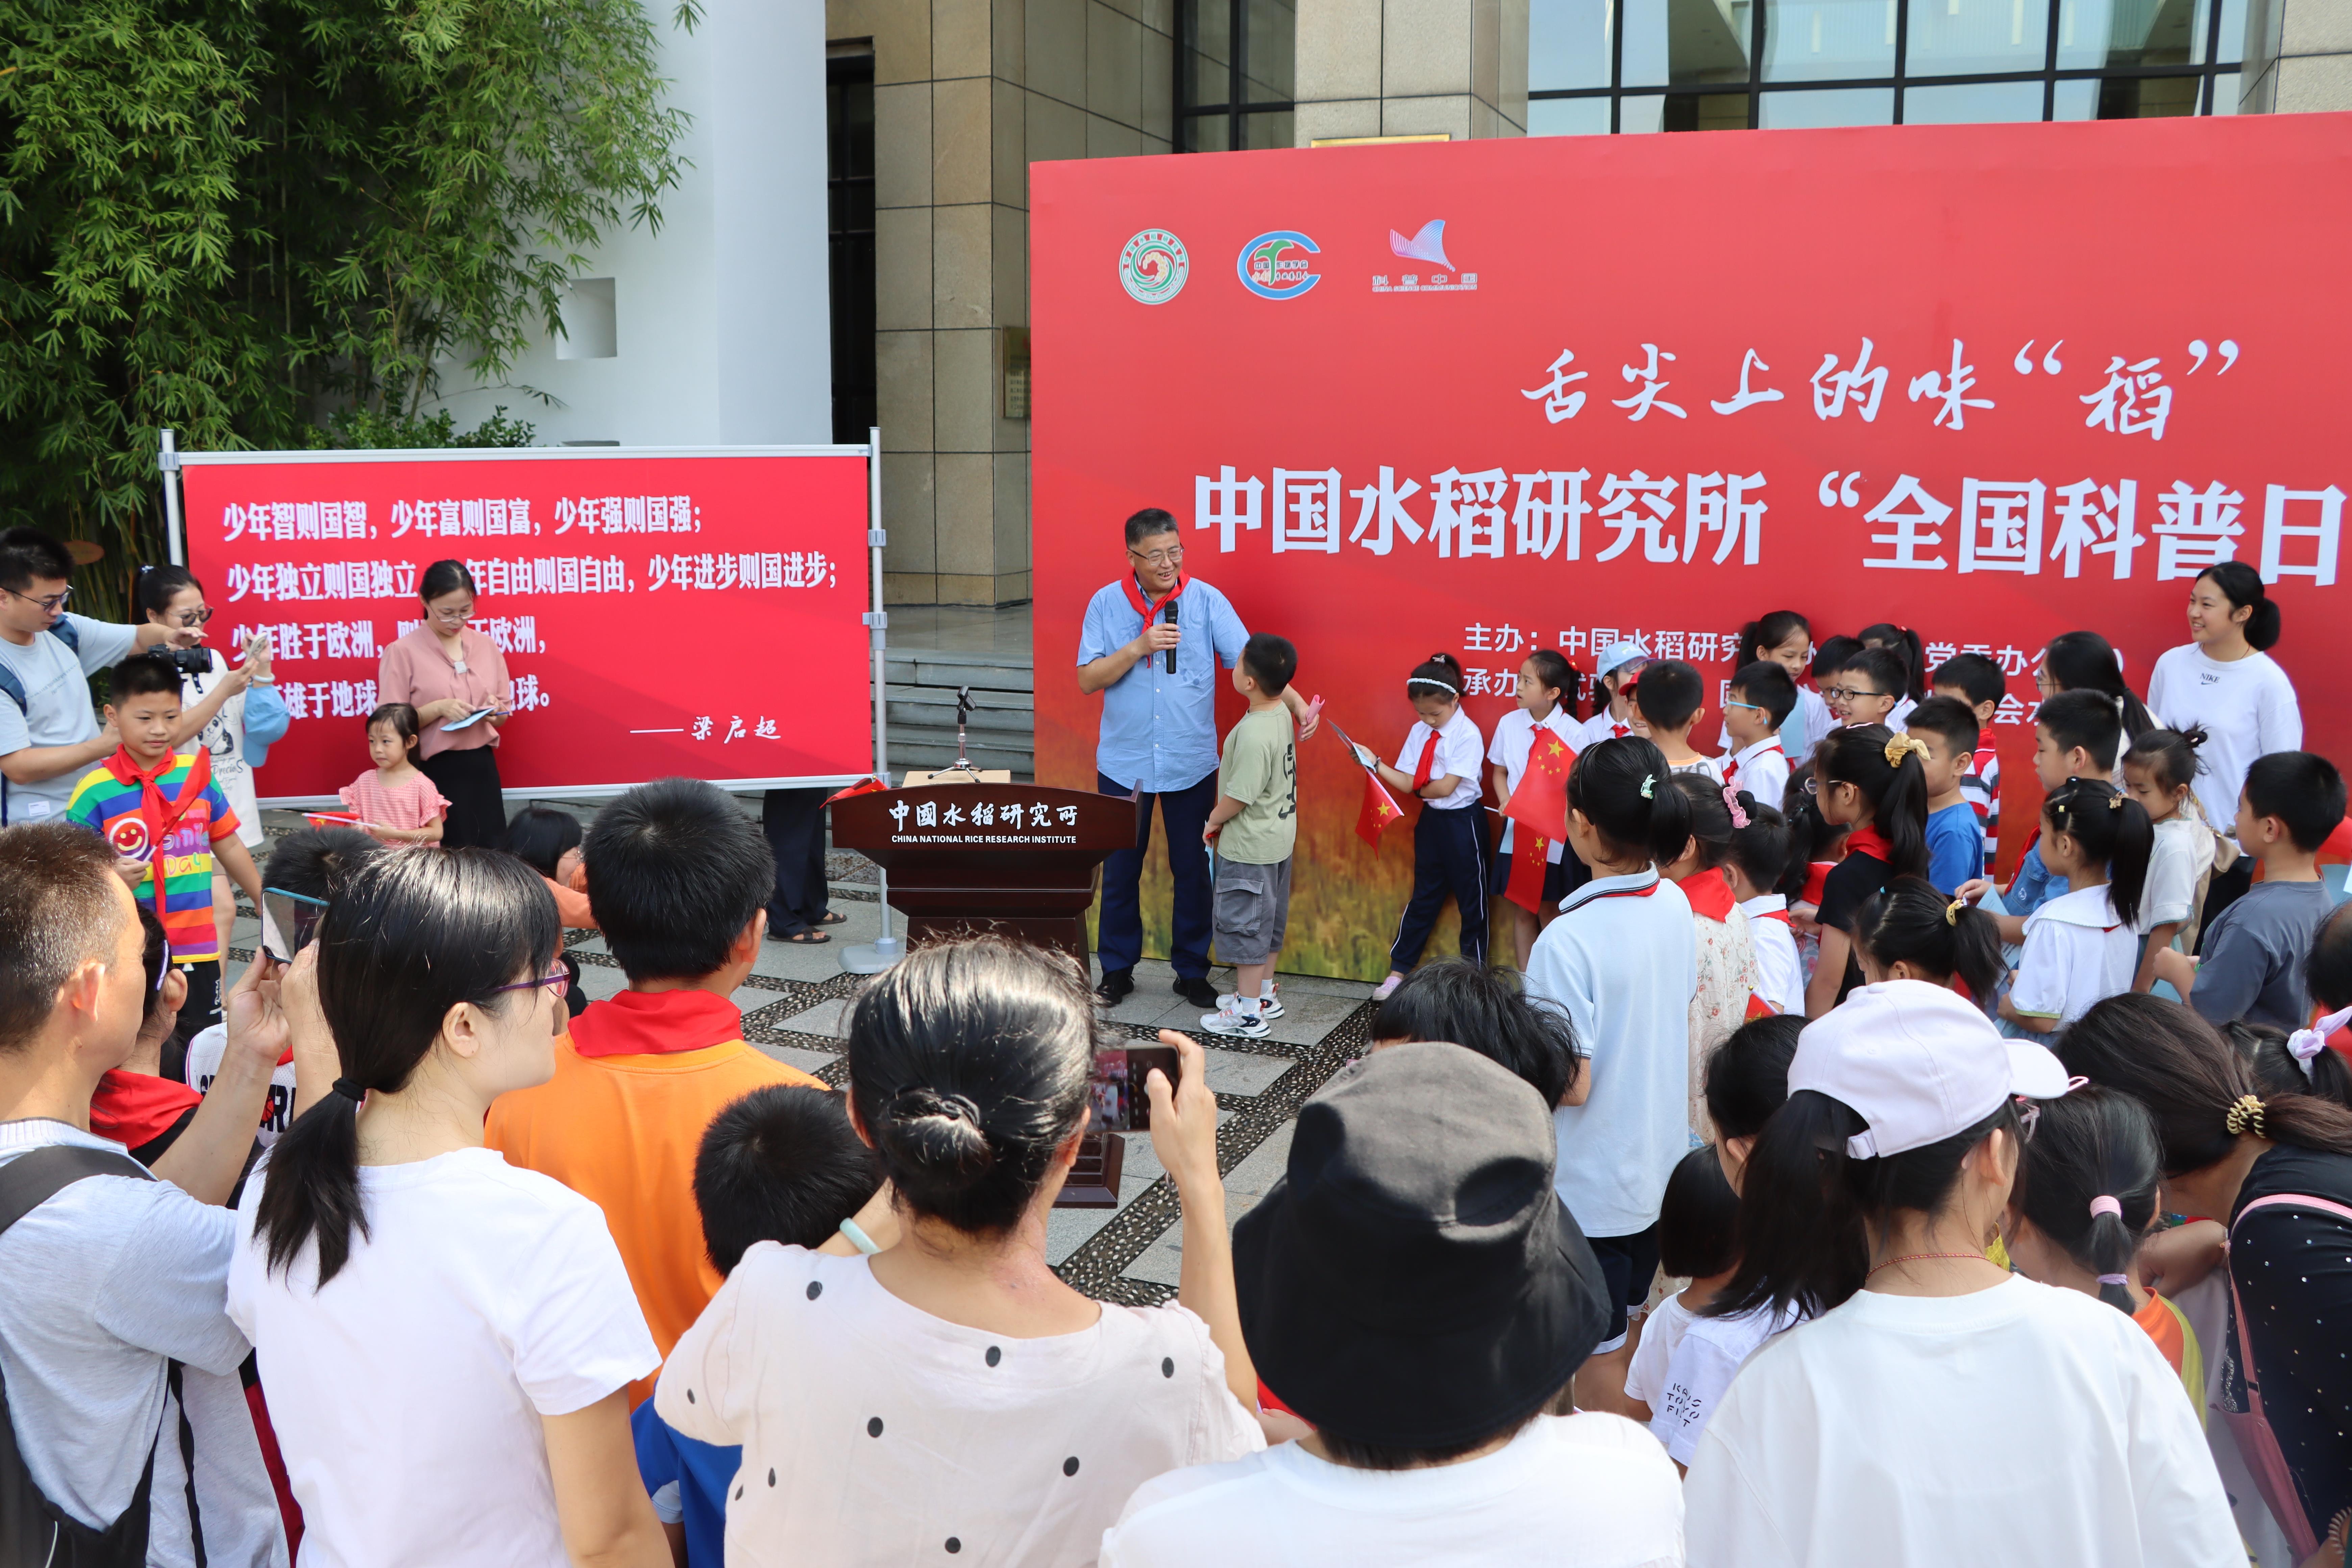 中国水稻研究所举办全国科普日活动 面向青少年宣传农业科学知识